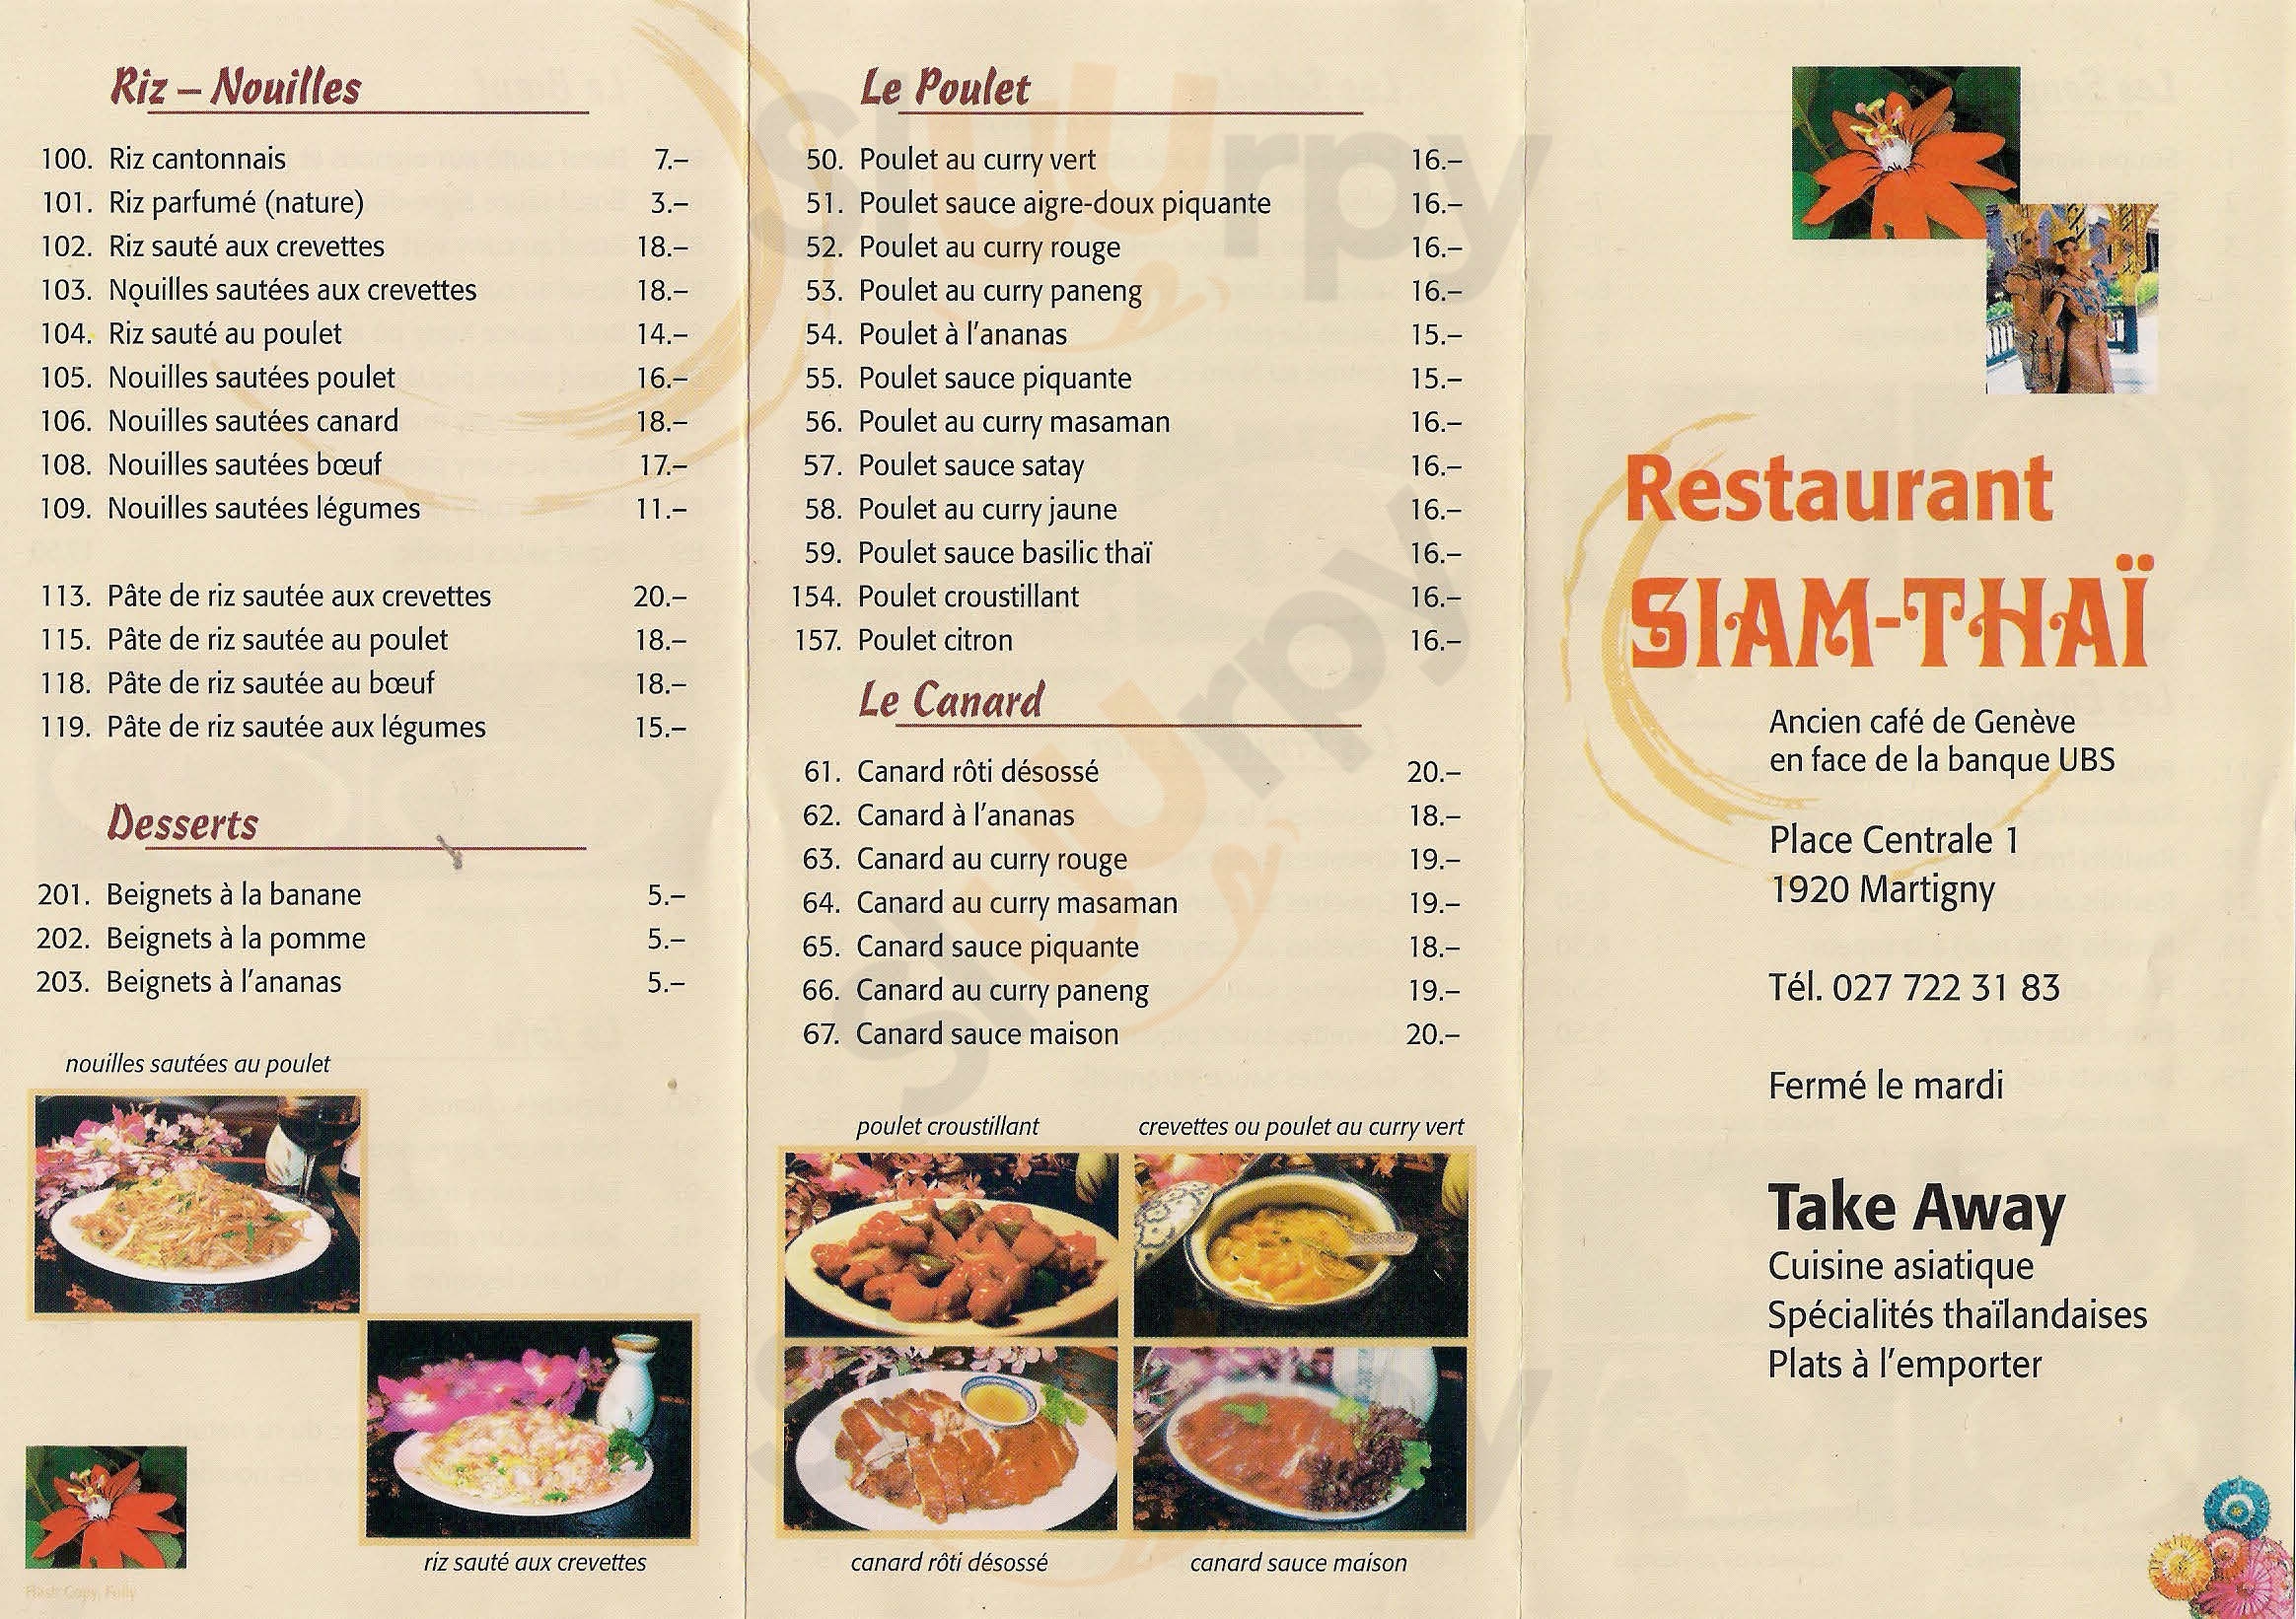 Siam Thai Restaurant Martigny Menu - 1